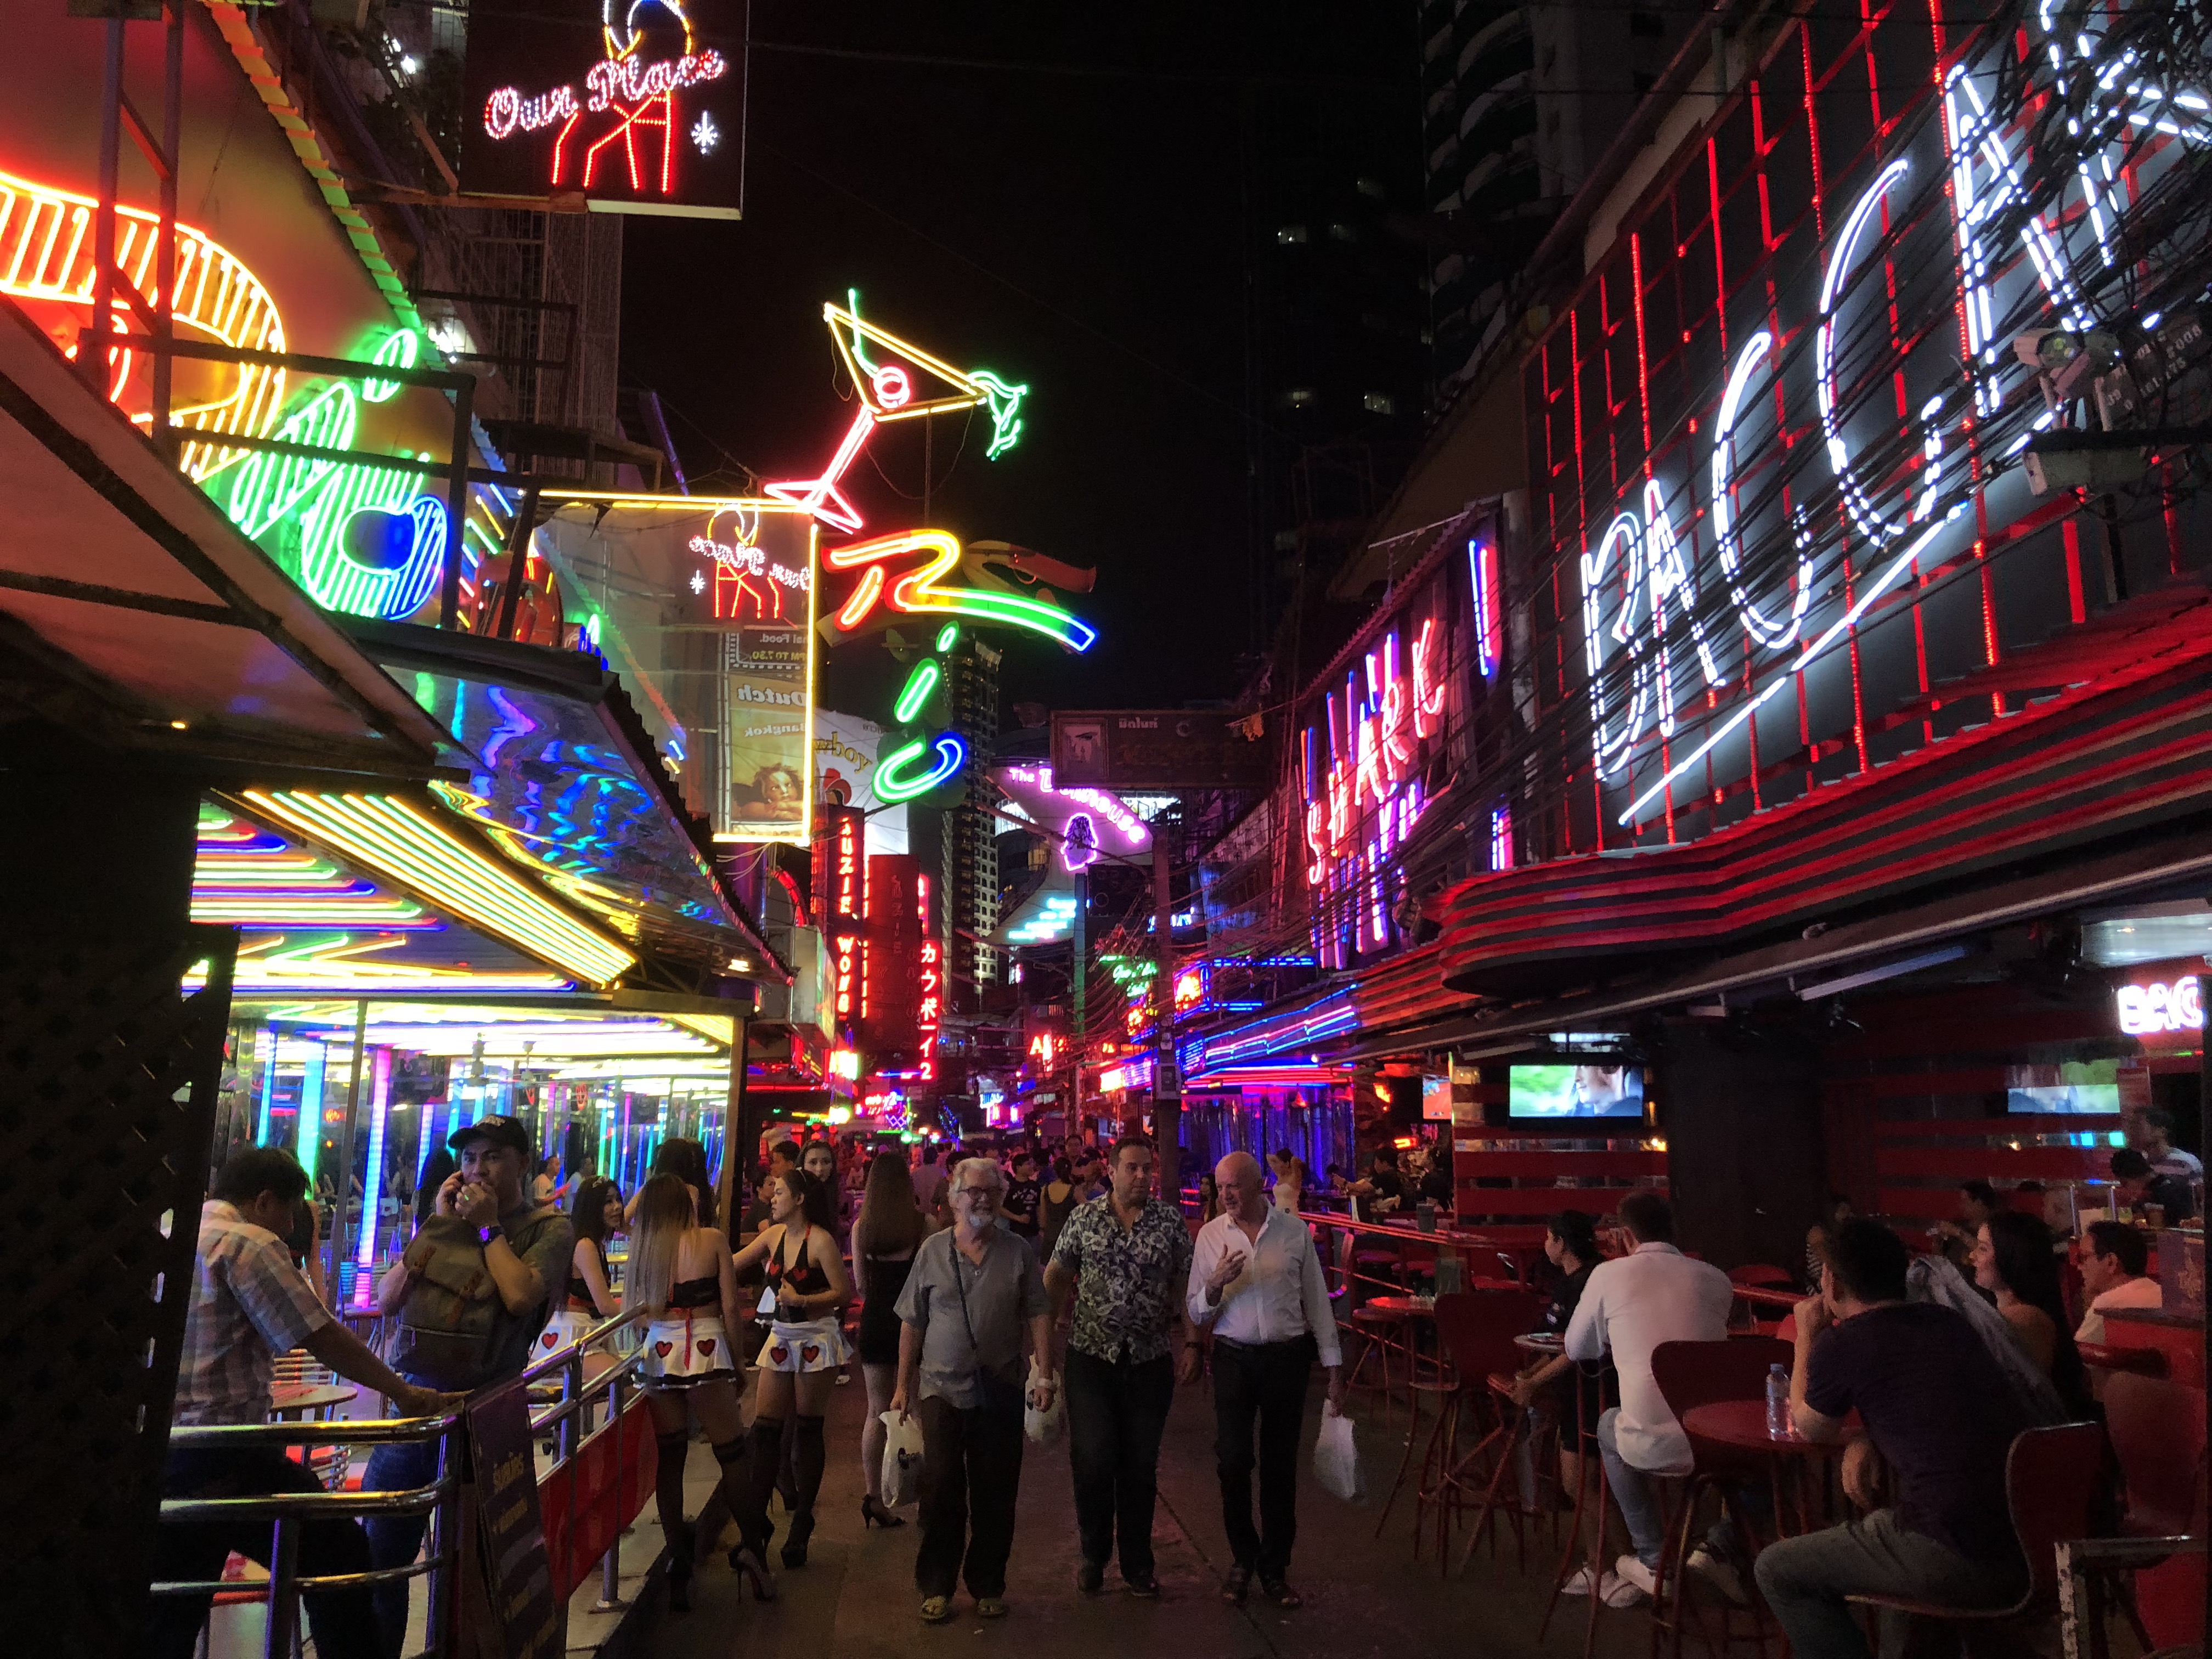 ソイカウボーイ バンコクの歓楽街ダントツ1位 有名店と言えばバカラ アジアの歩き方